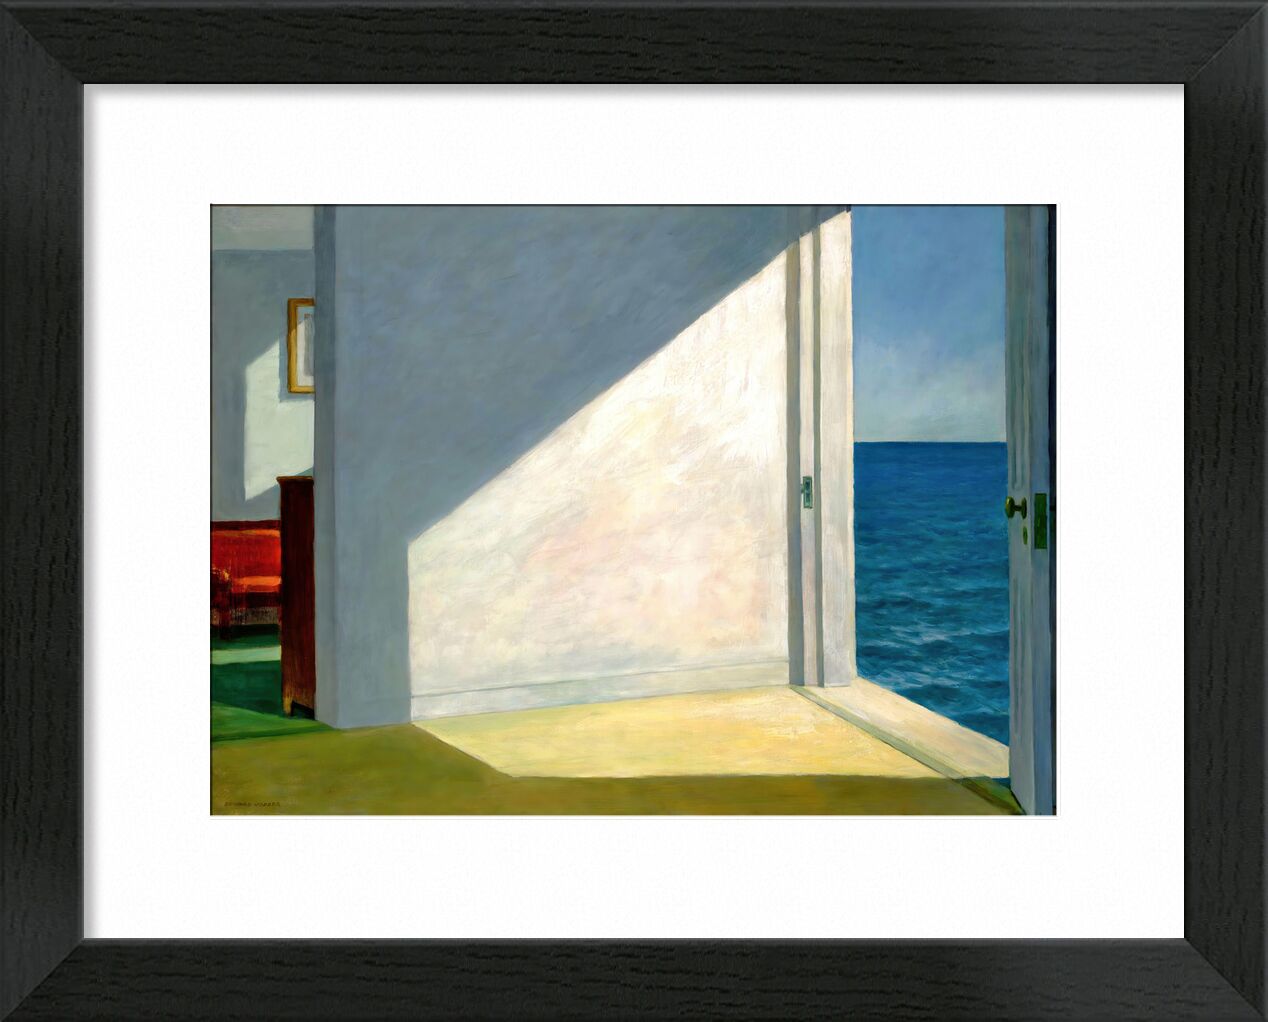 Zimmer am Meer - Edward Hopper von Bildende Kunst, Prodi Art, Meer, Strand, Sonne, Sommer-, Himmel, Urlaub, Eward Hopper